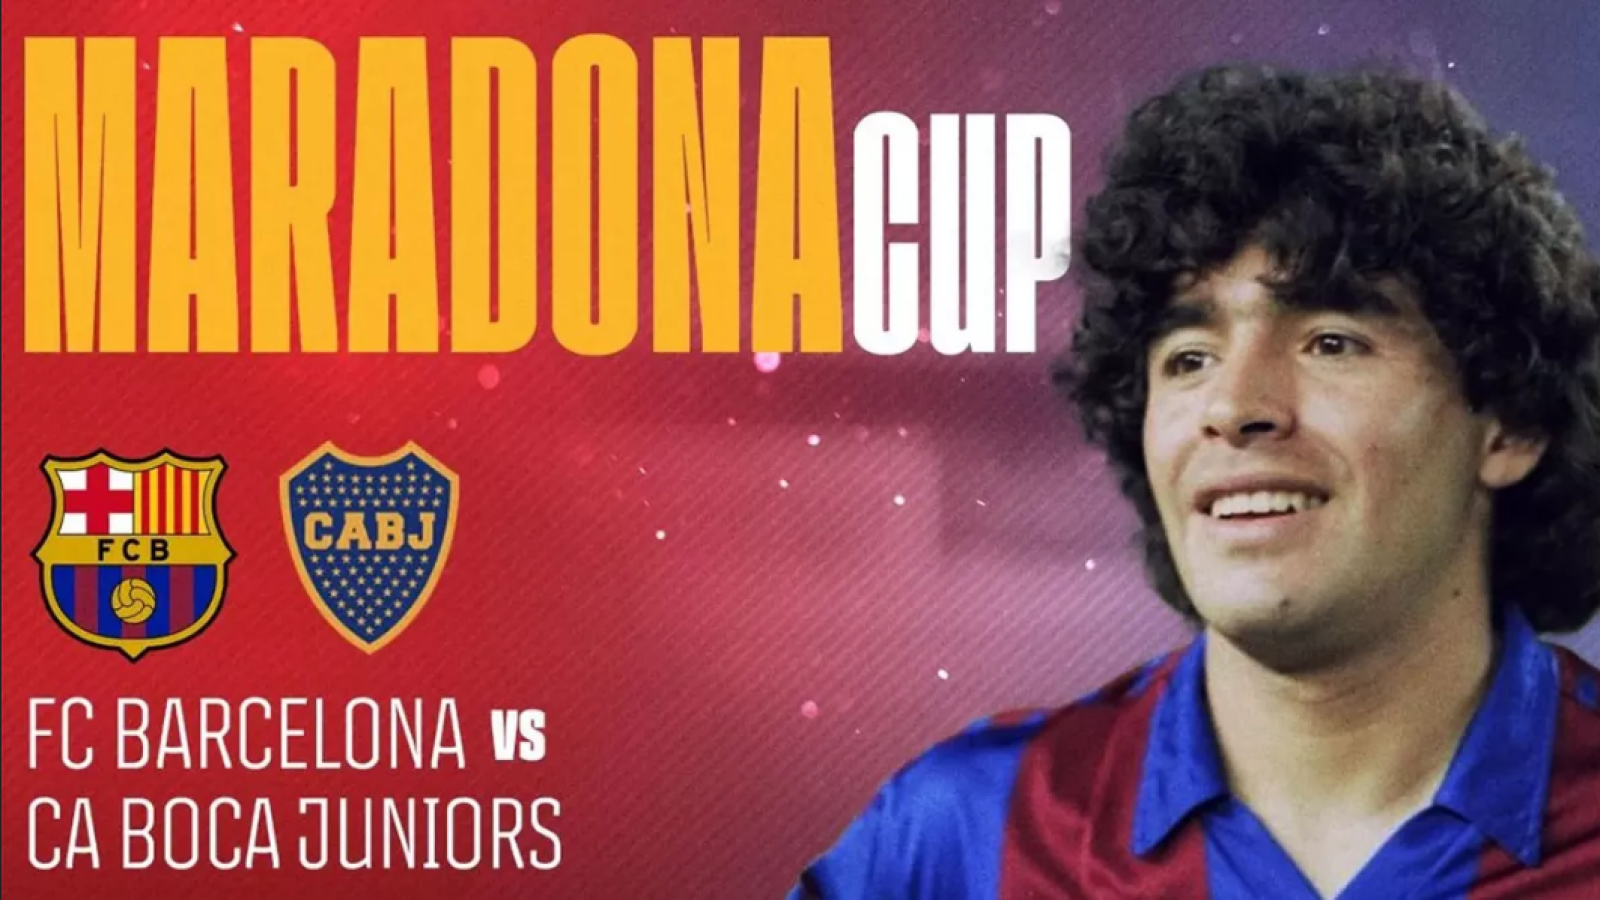 Imagen Maradona Cup.